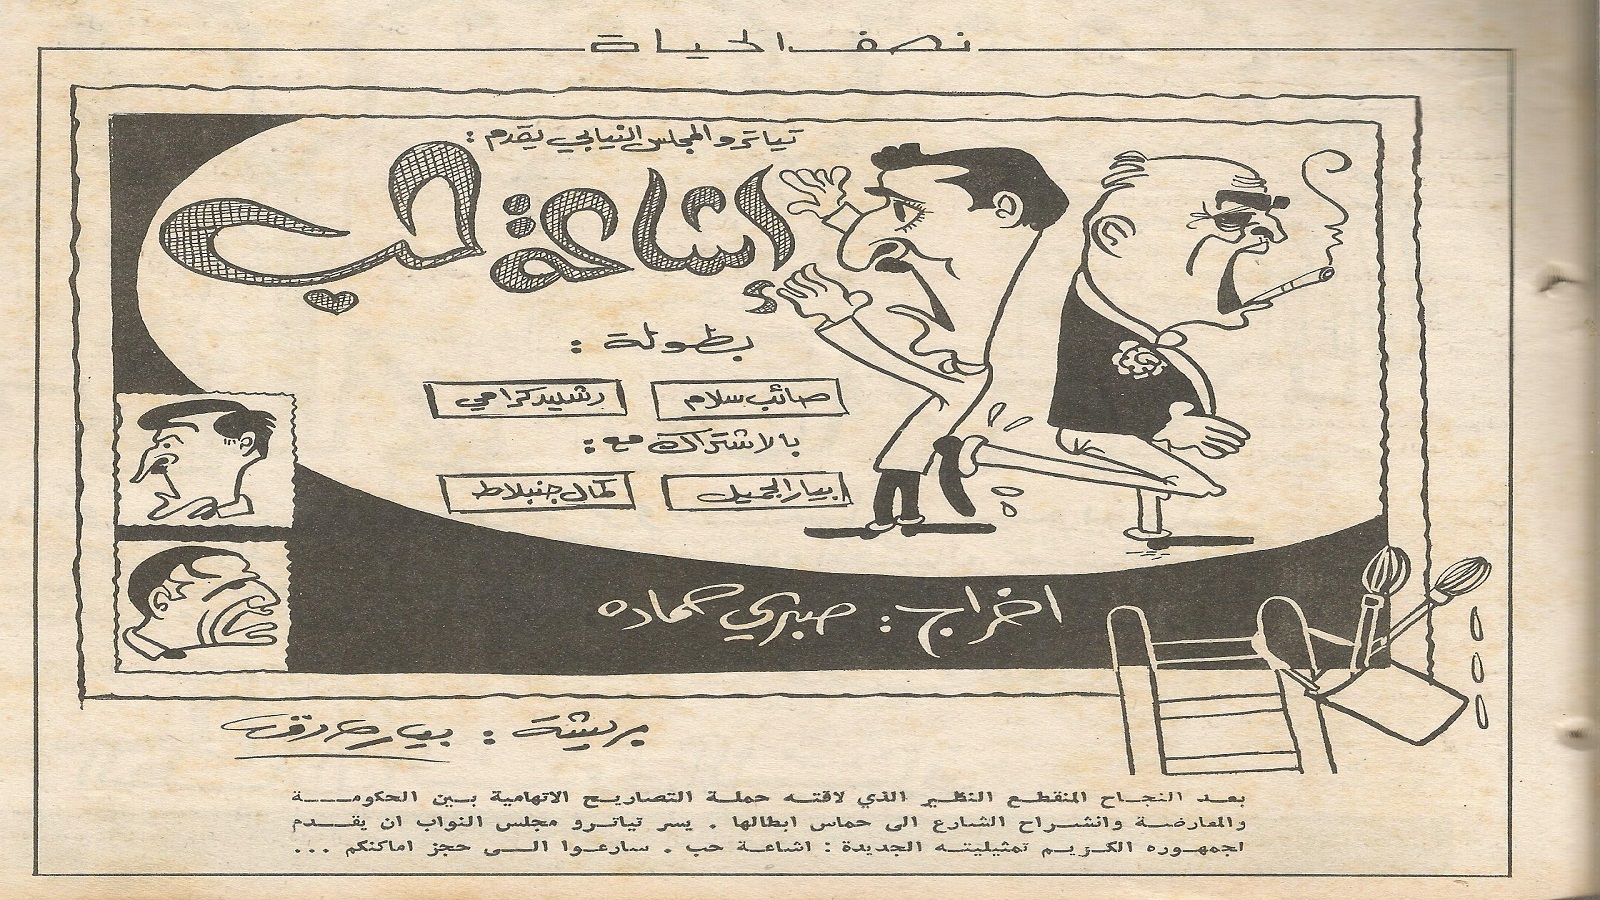 حكومة صائب سلام في رسم كاريكاتوري توقيع بيار صادق. 